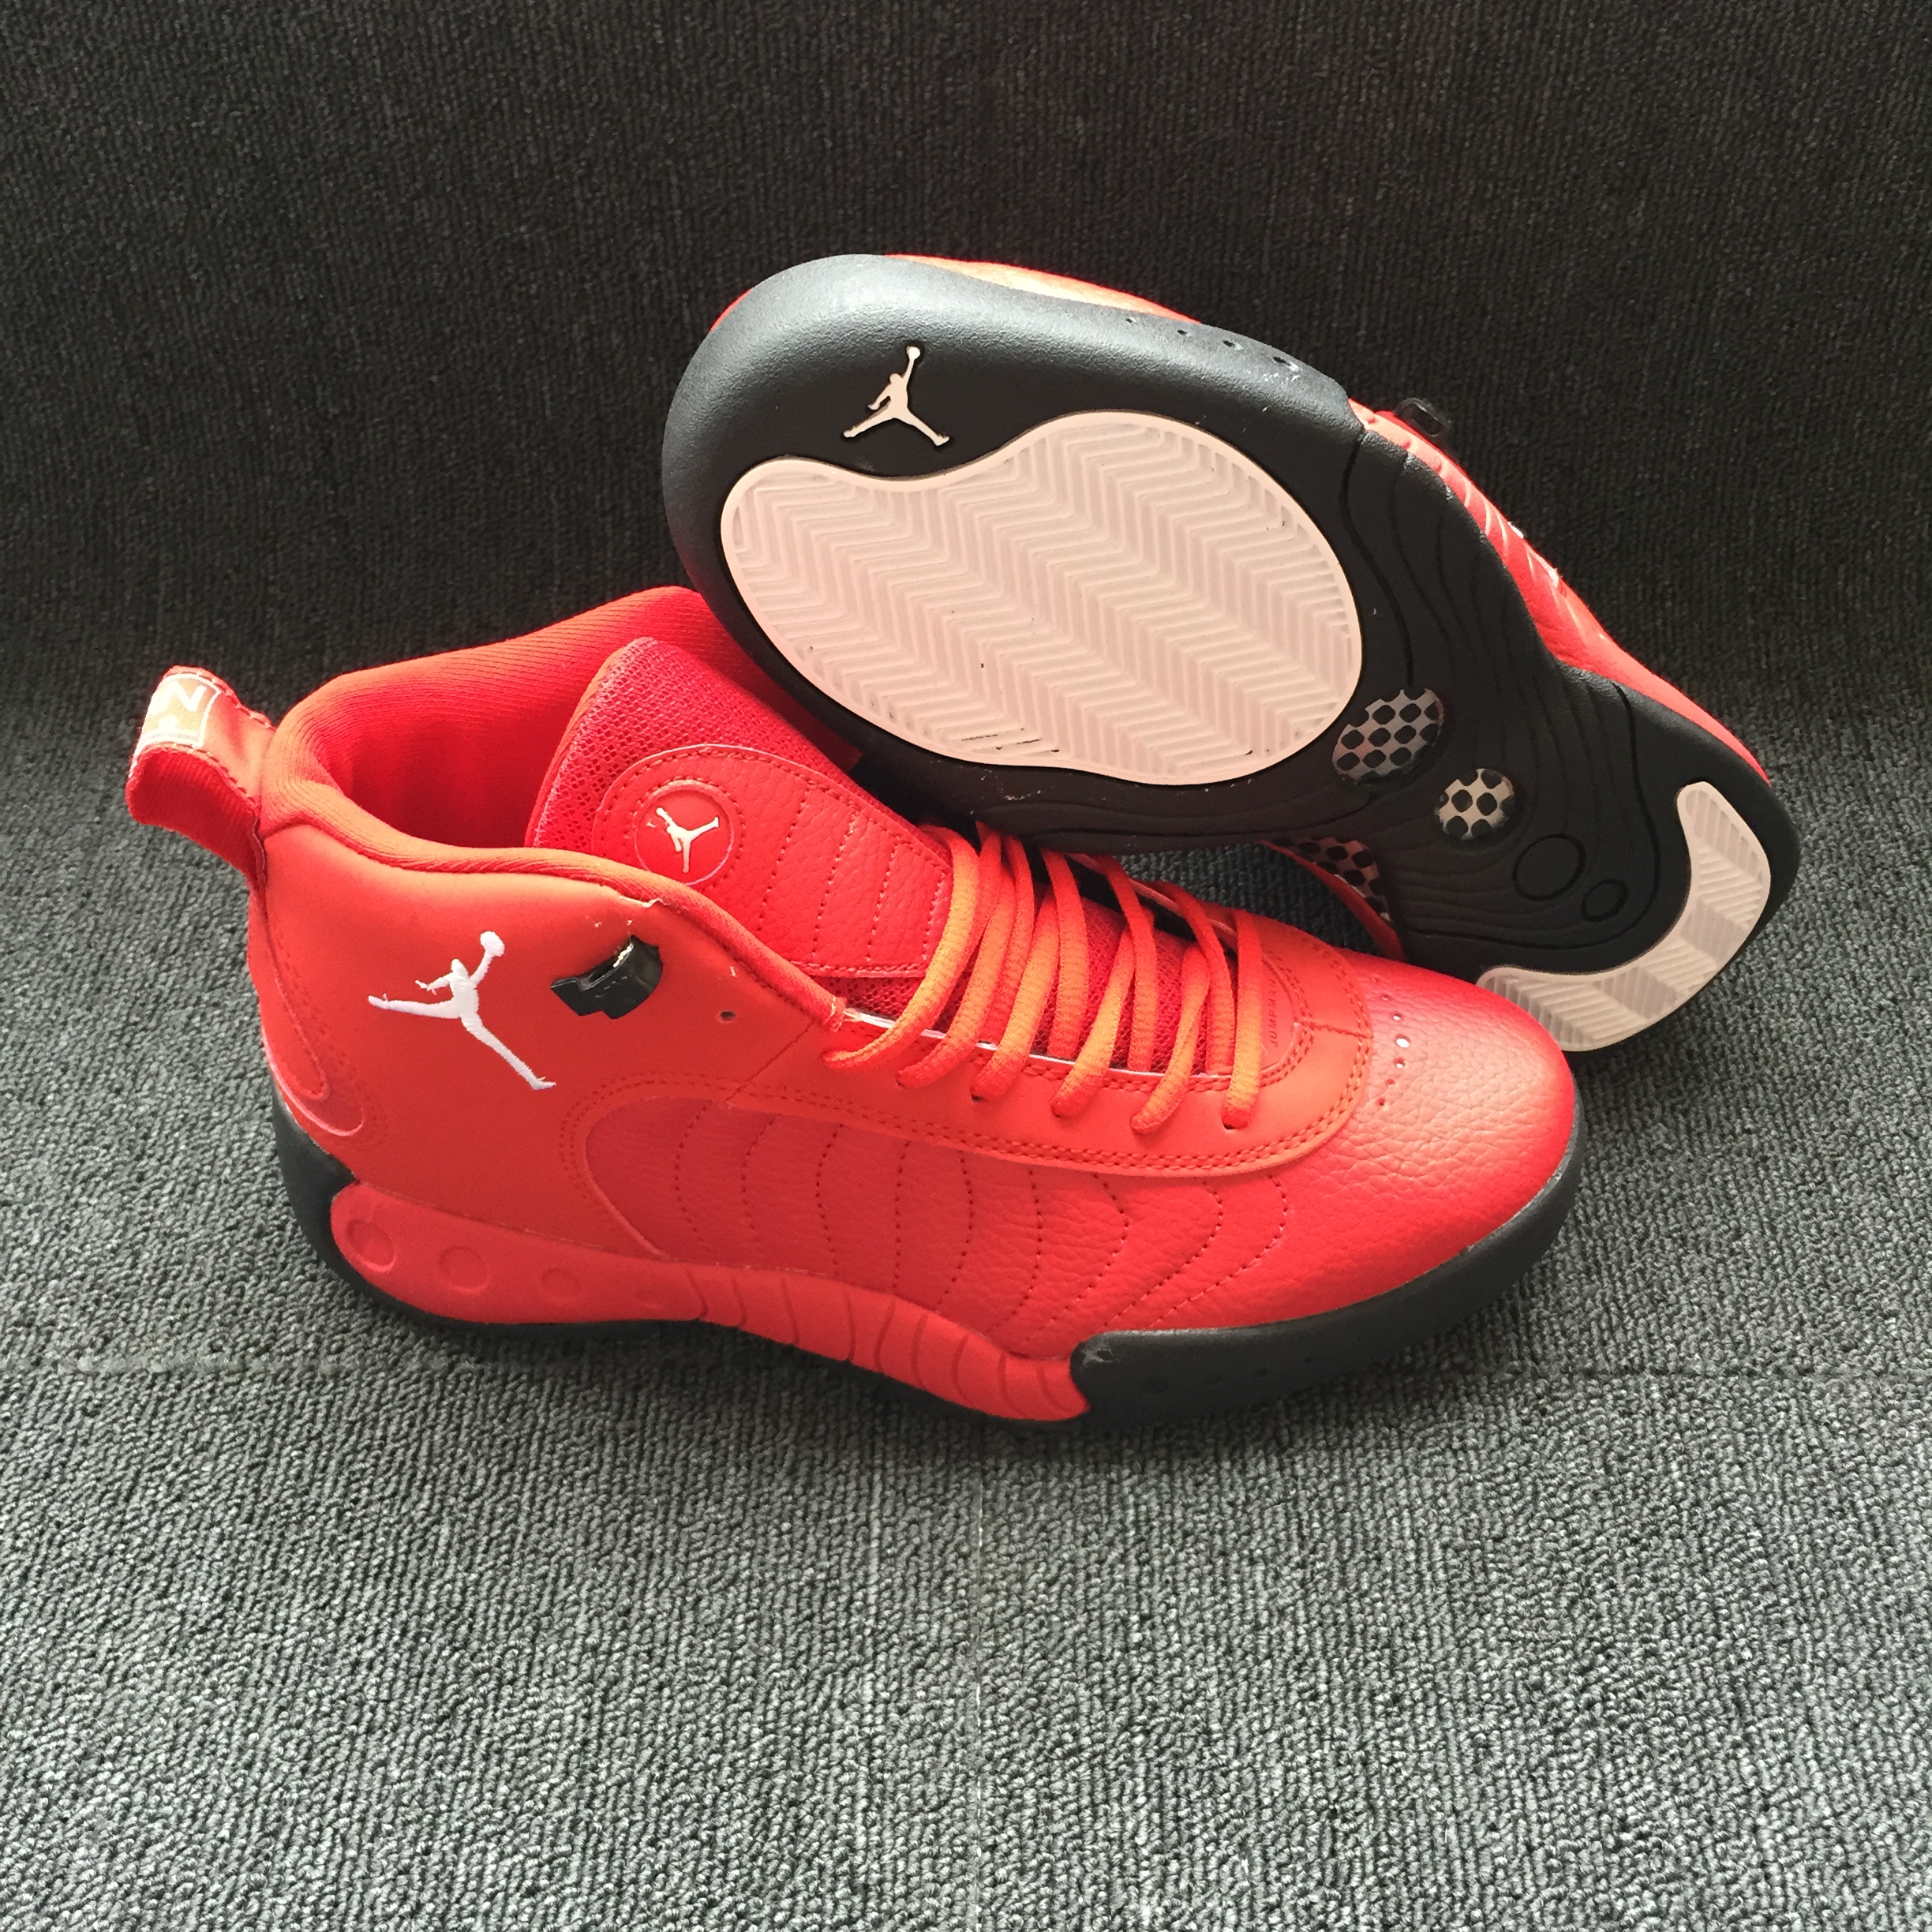 New Air Jordan 12.5 Red Black Shoes